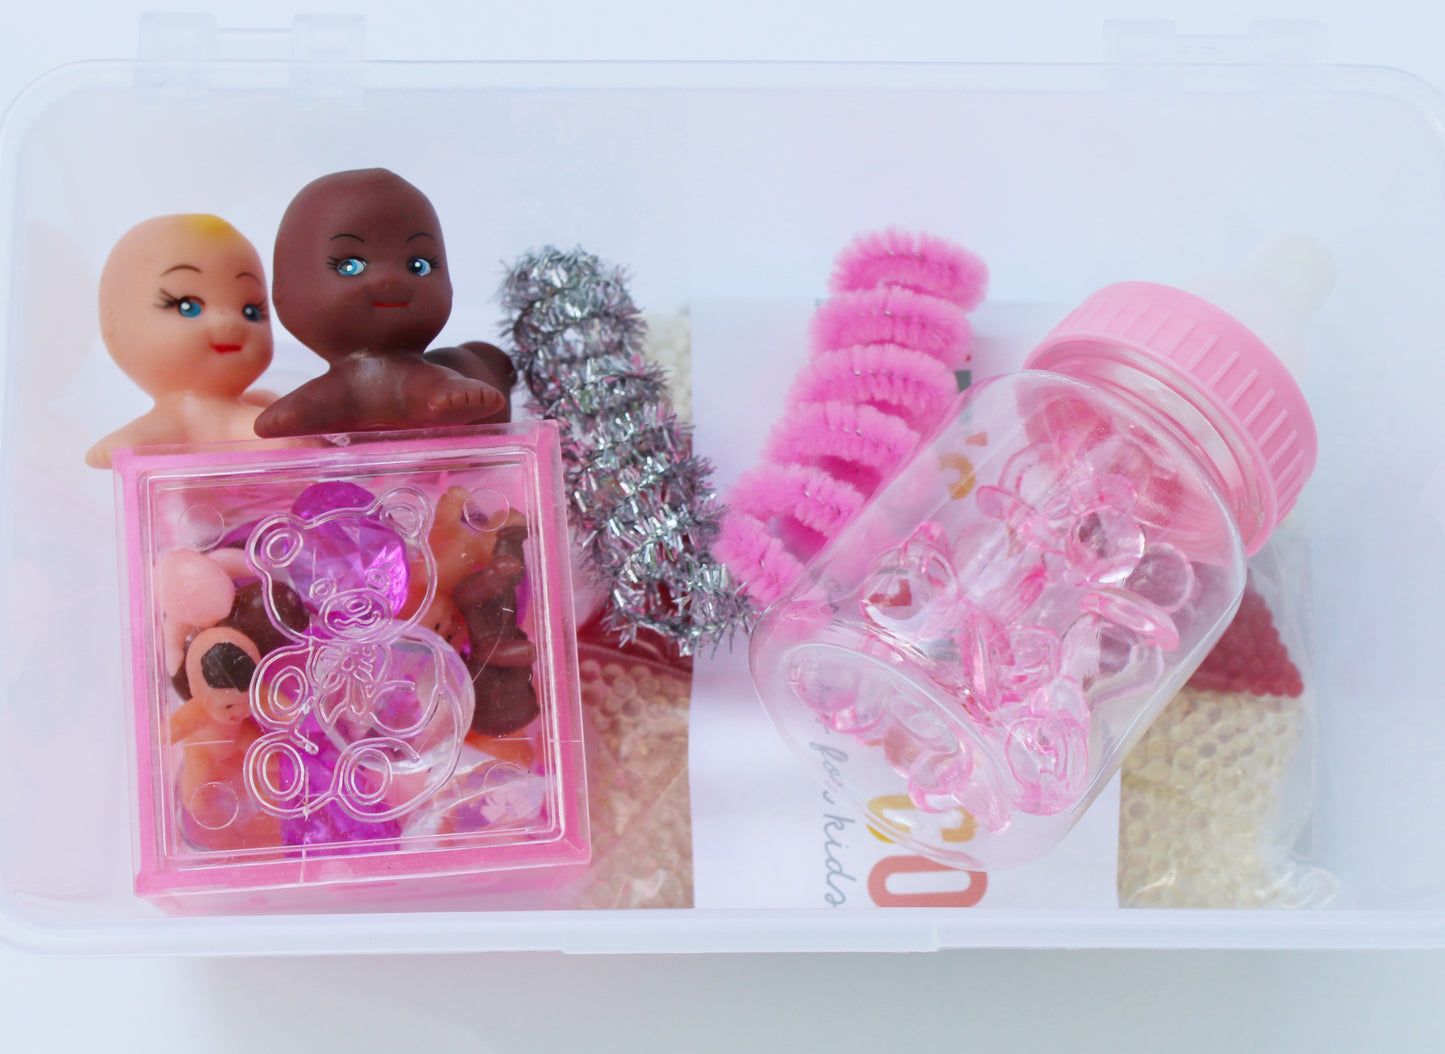 Baby mini kits